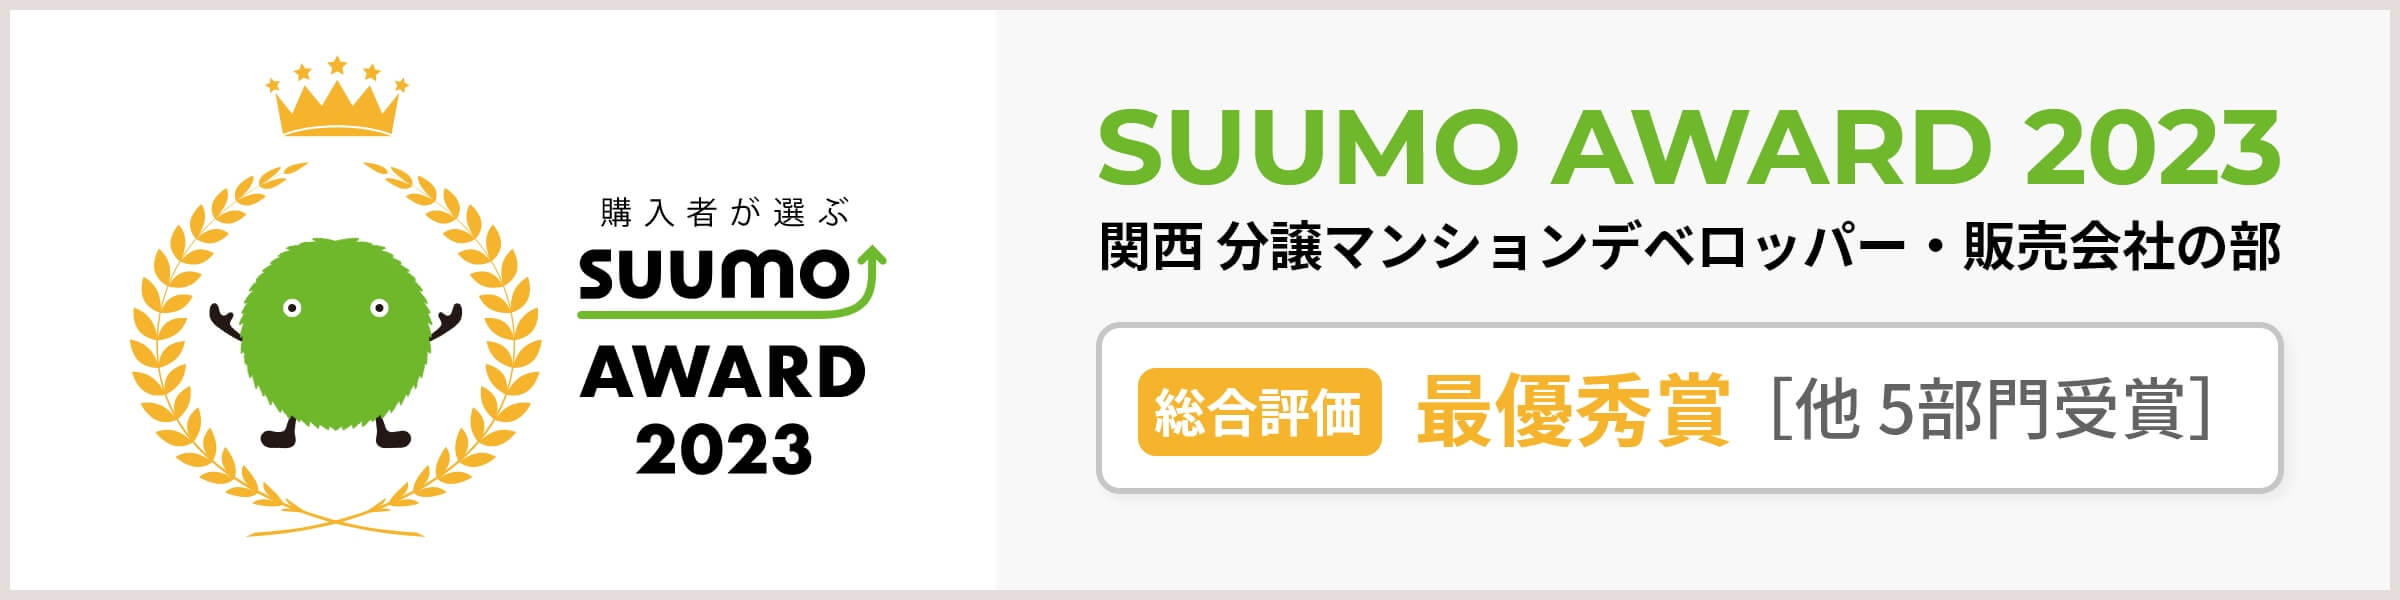 購入者が選ぶSUUMO AWARD 2023 関西 分譲マンションデベロッパー・販売会社の部 総合評価 最優秀賞 他 5部門受賞